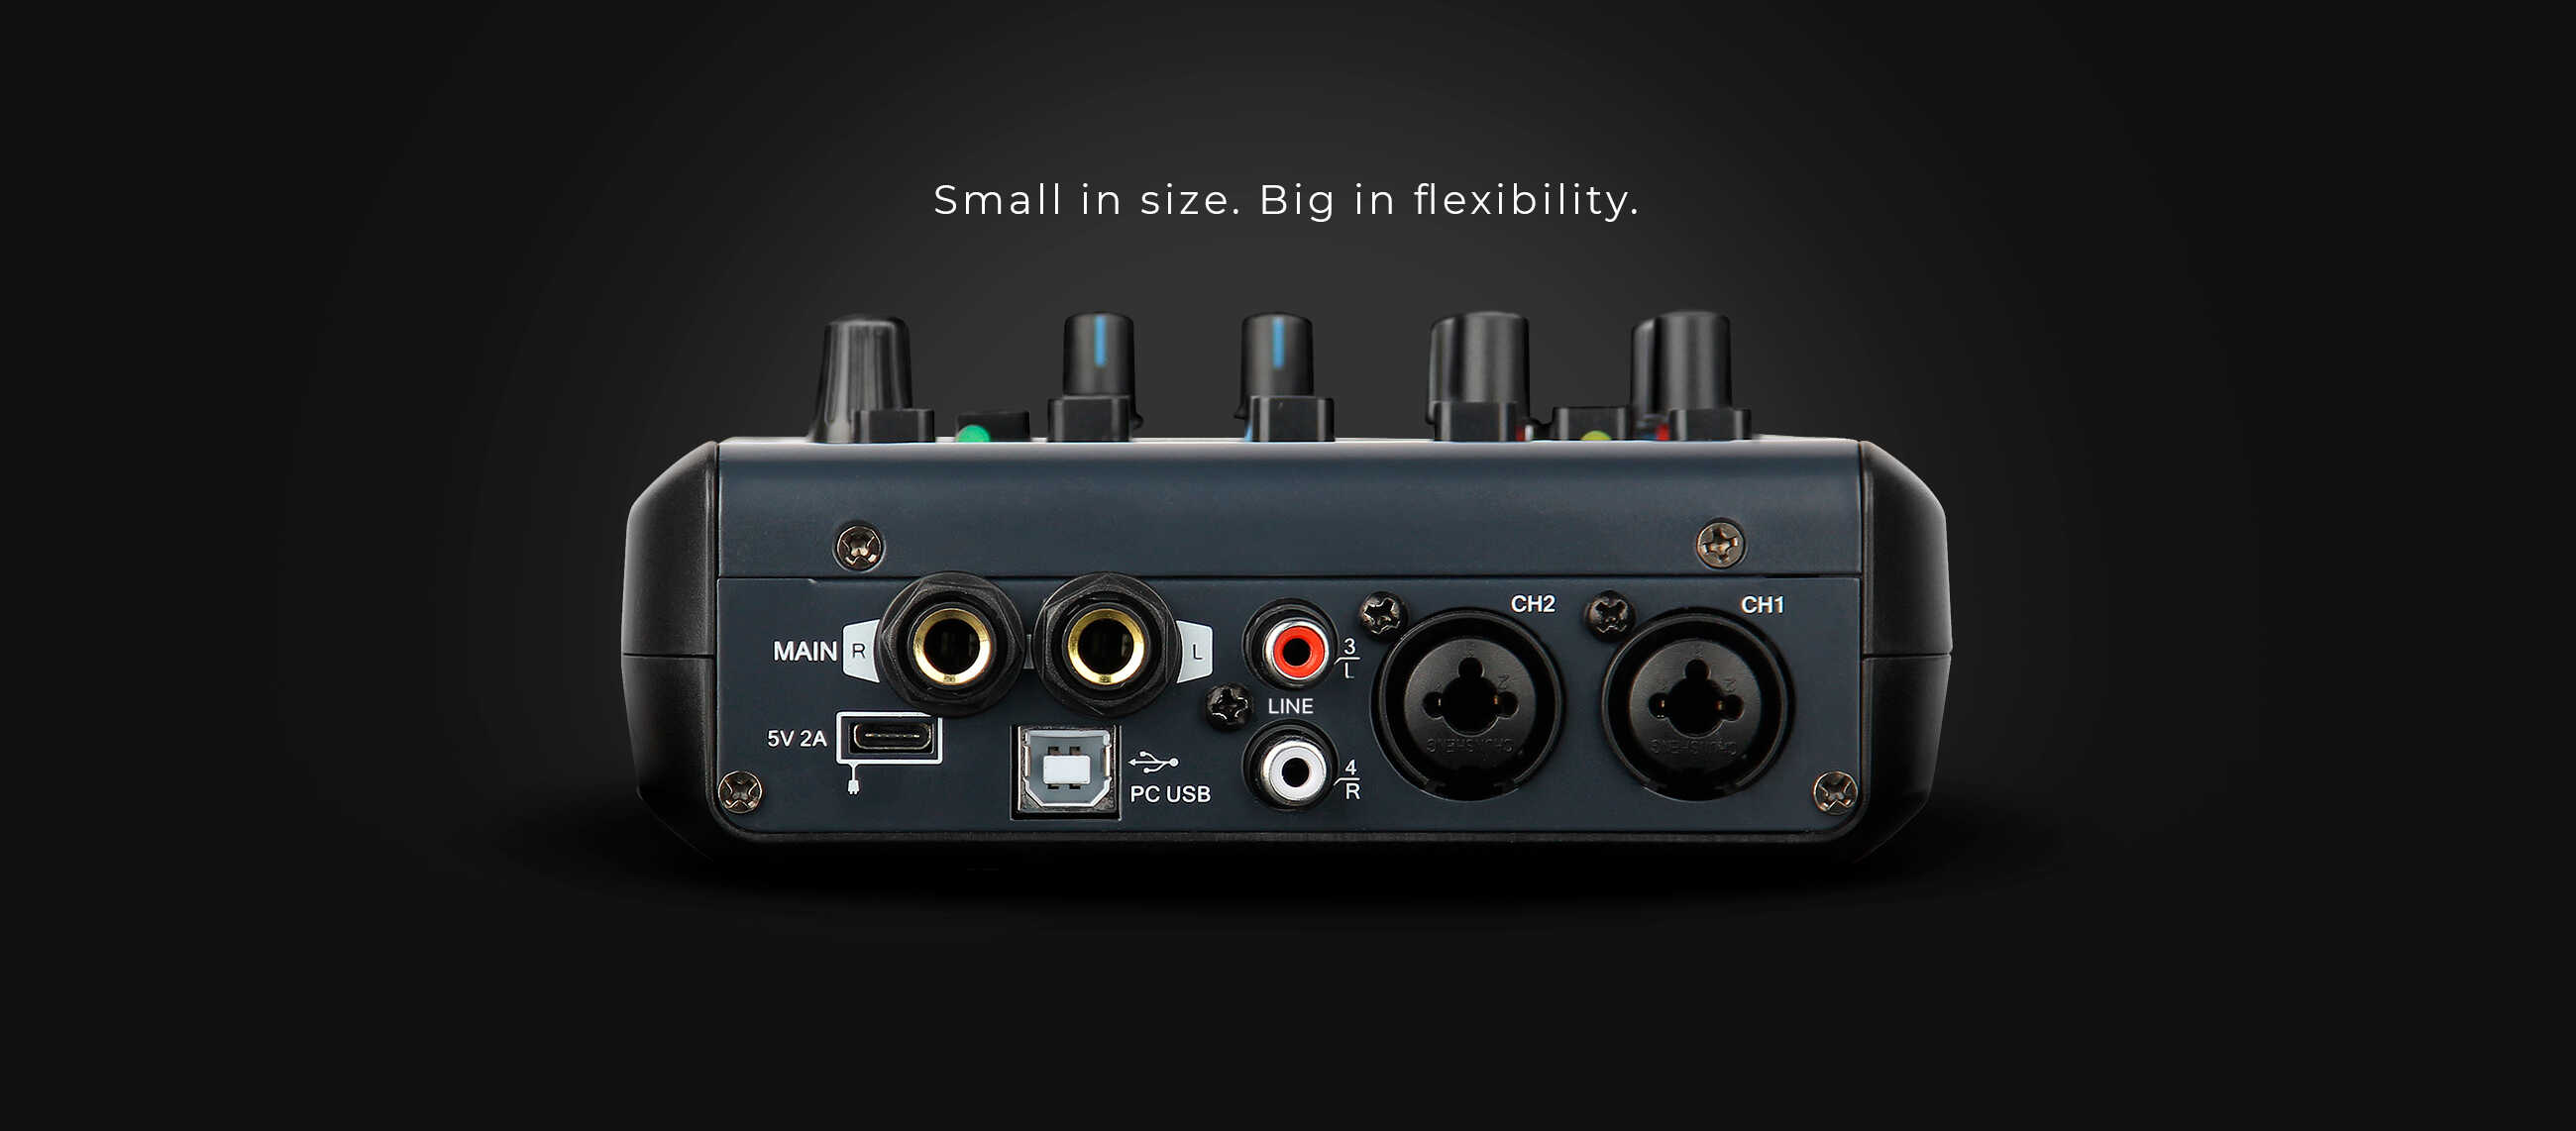 NEXT-Audiocom-M1-Small